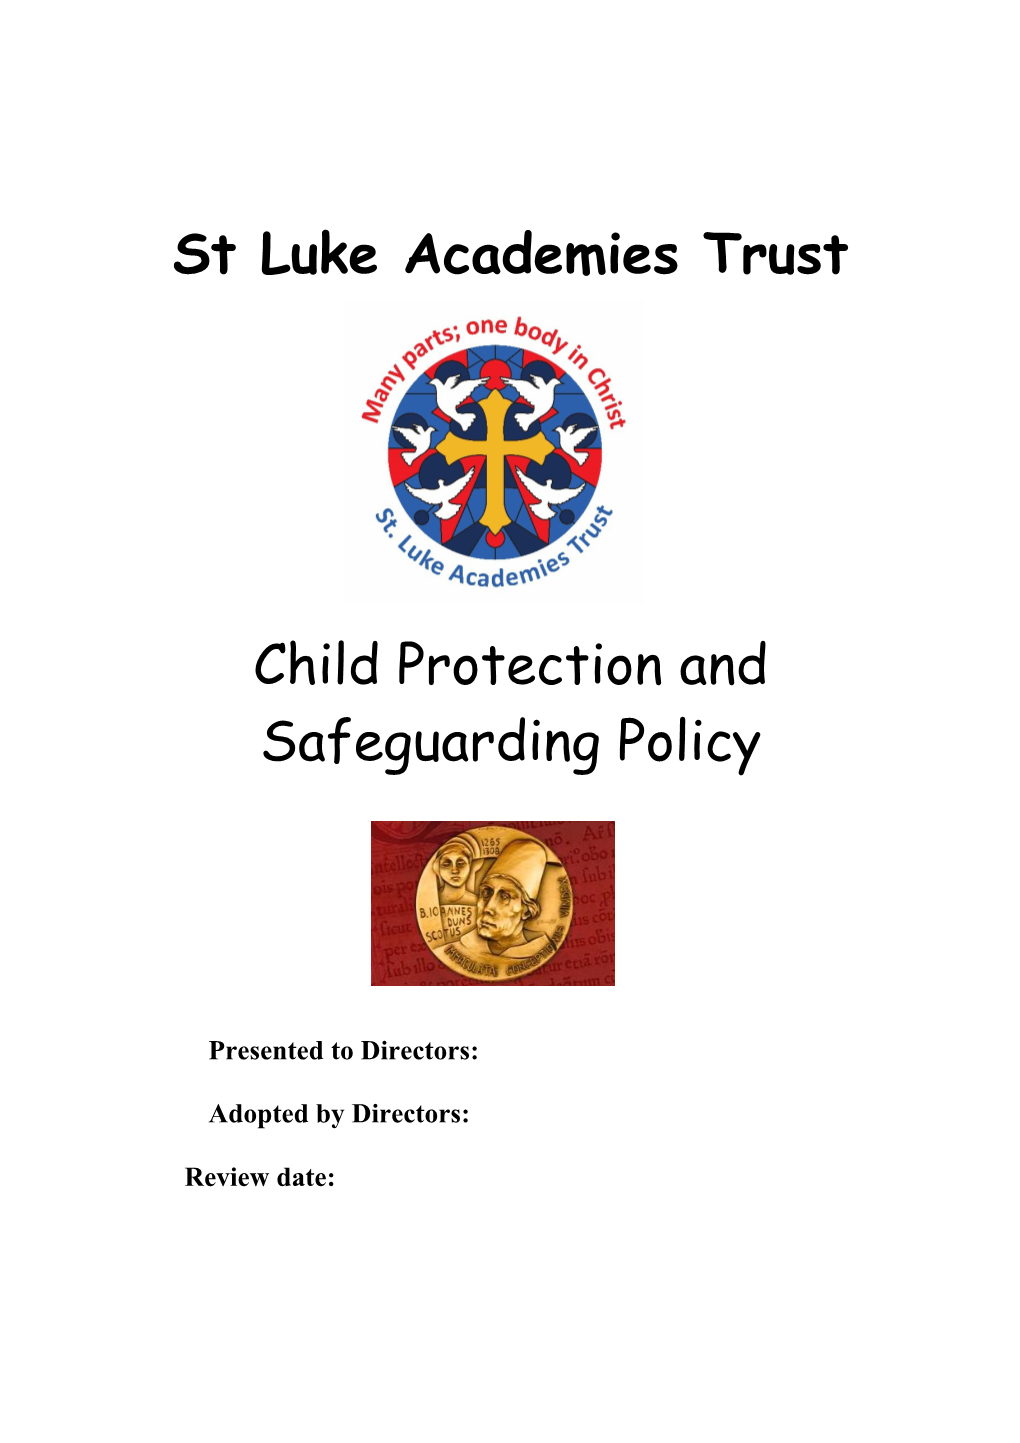 St Luke Academies Trust